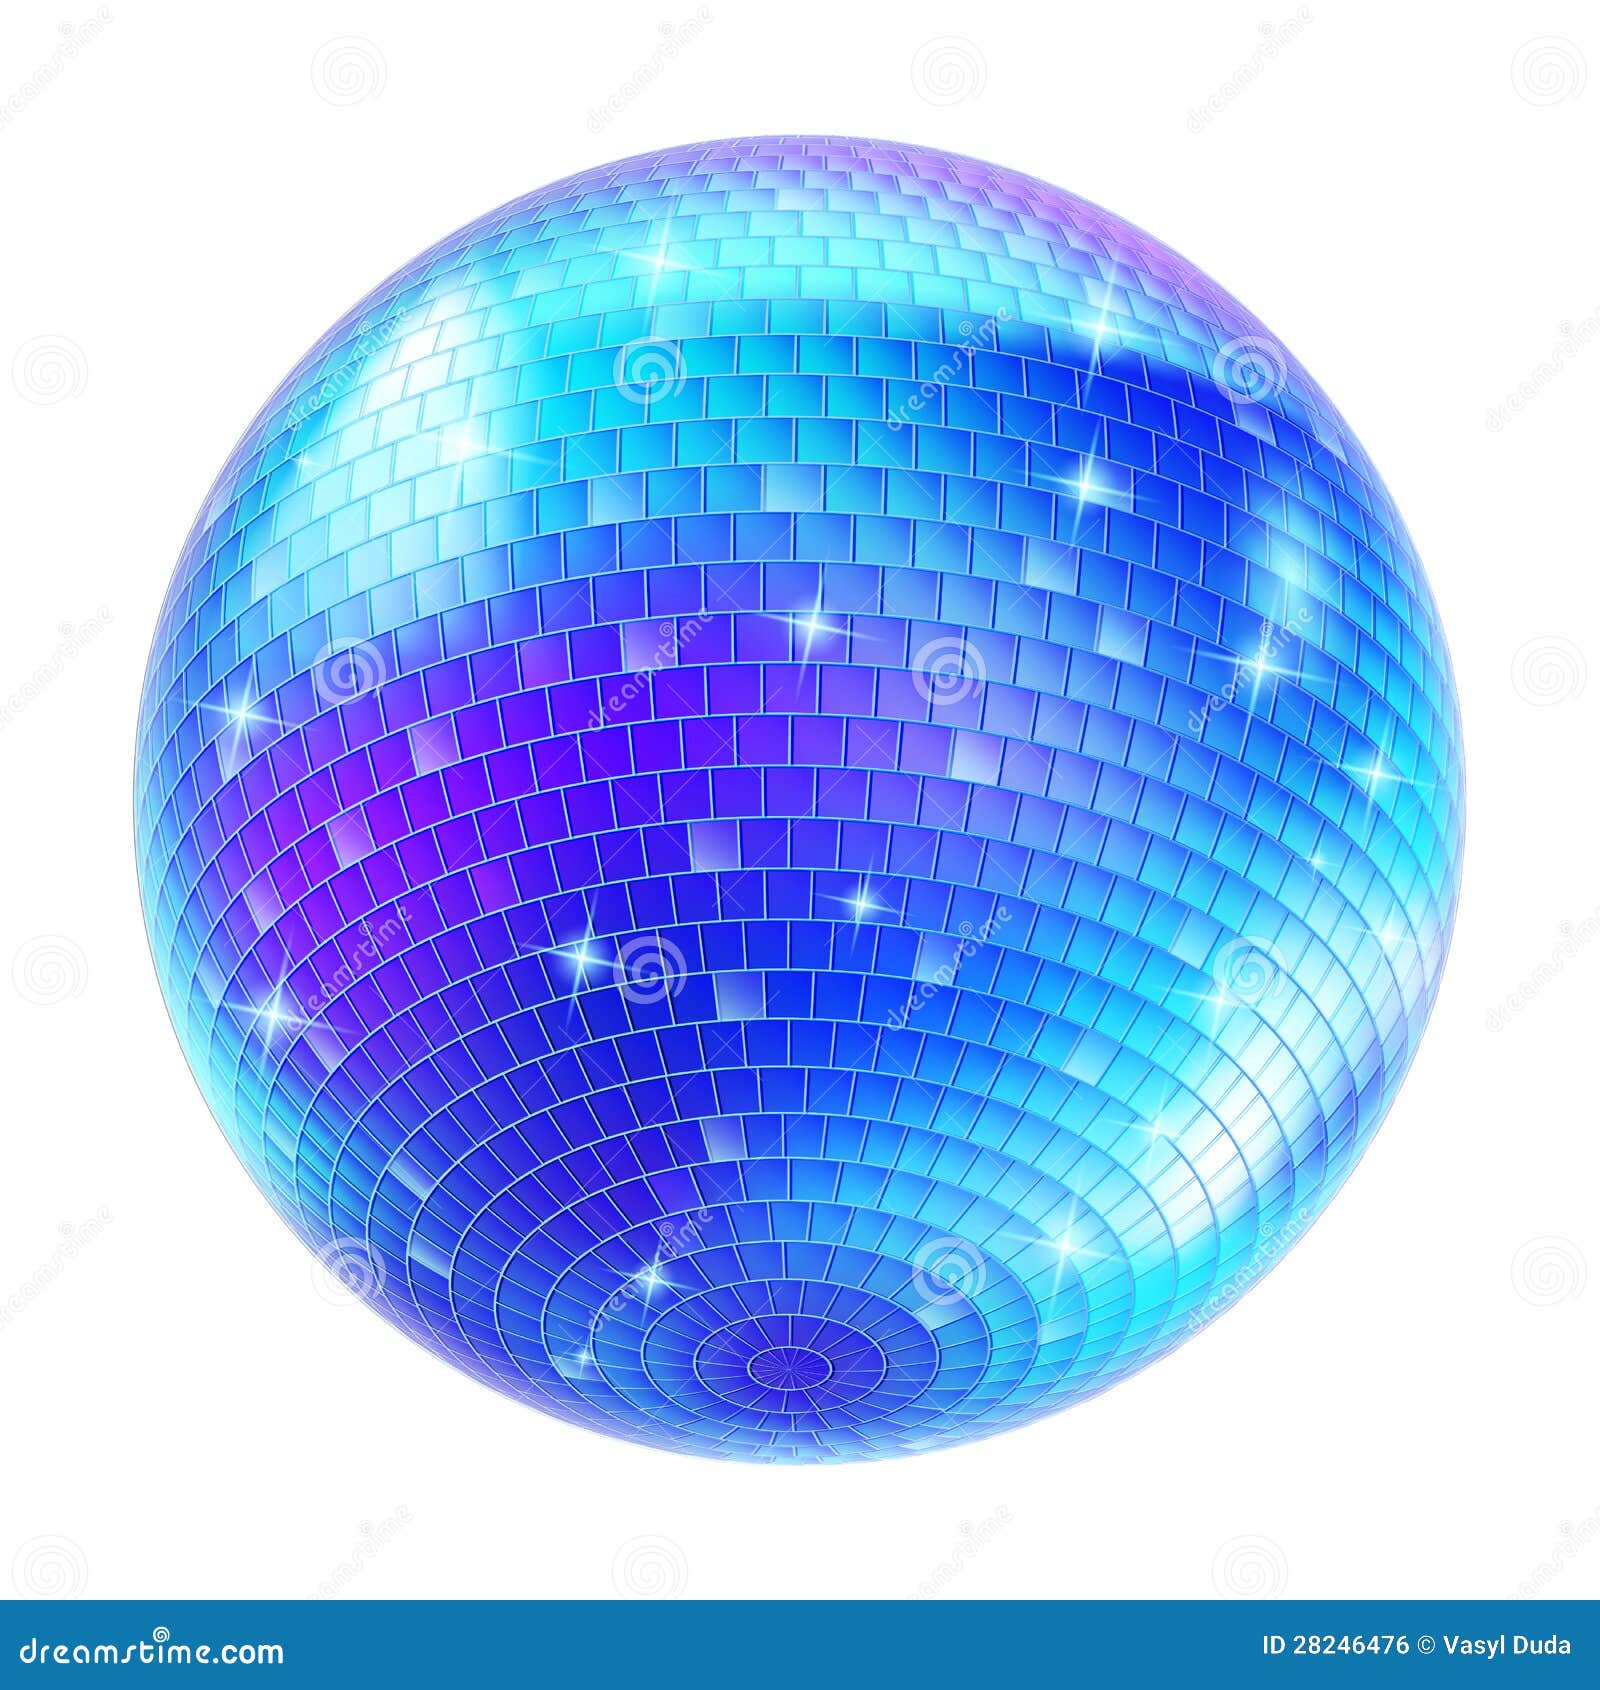 Decoración de Hogar Bola Colgante para Efecto de Luz DJ Decoración de Fiesta de Disco de 70s 2 Bolas de Discoteca de Espejo de Pulgadas Plata, 4,7 Pulgadas Accesorio